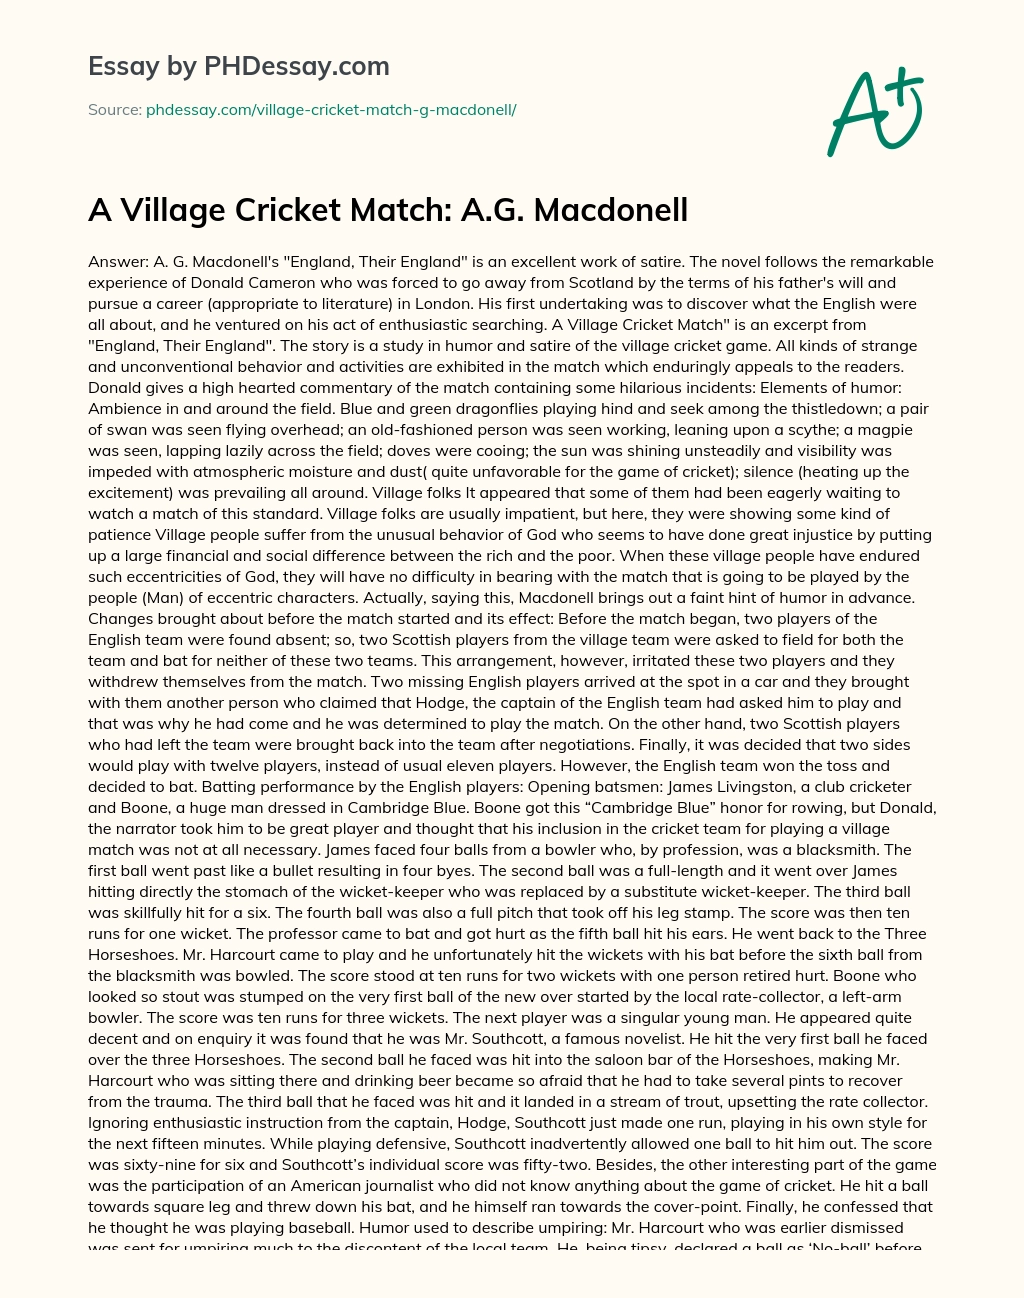 A Village Cricket Match: A.G. Macdonell essay